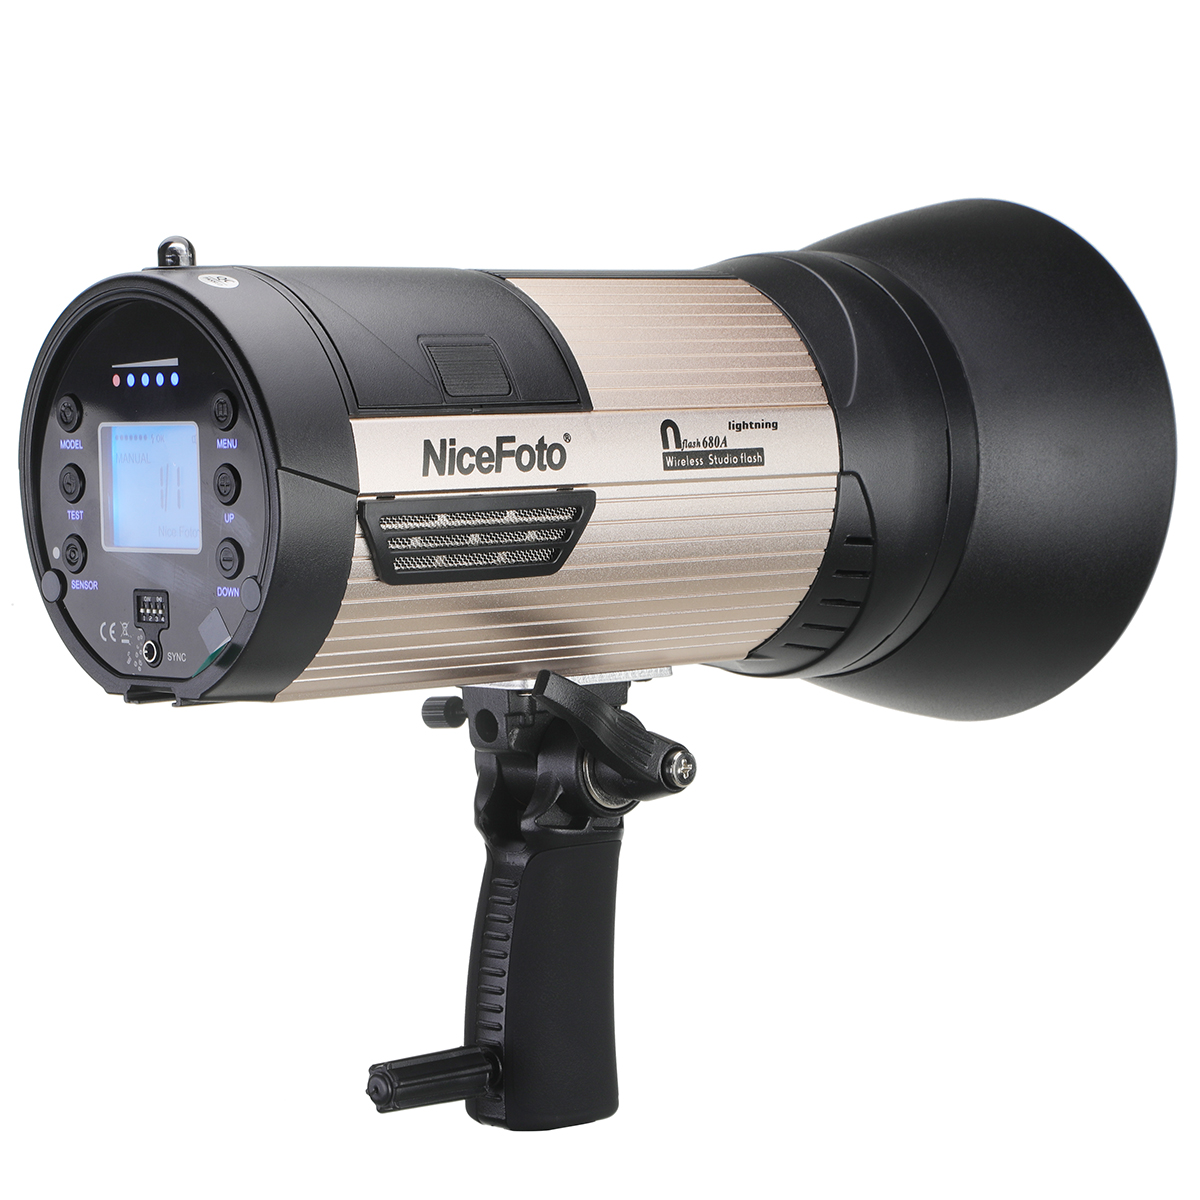 NiceFoto N-flash 680A Đèn flash studio chụp ảnh chuyên nghiệp